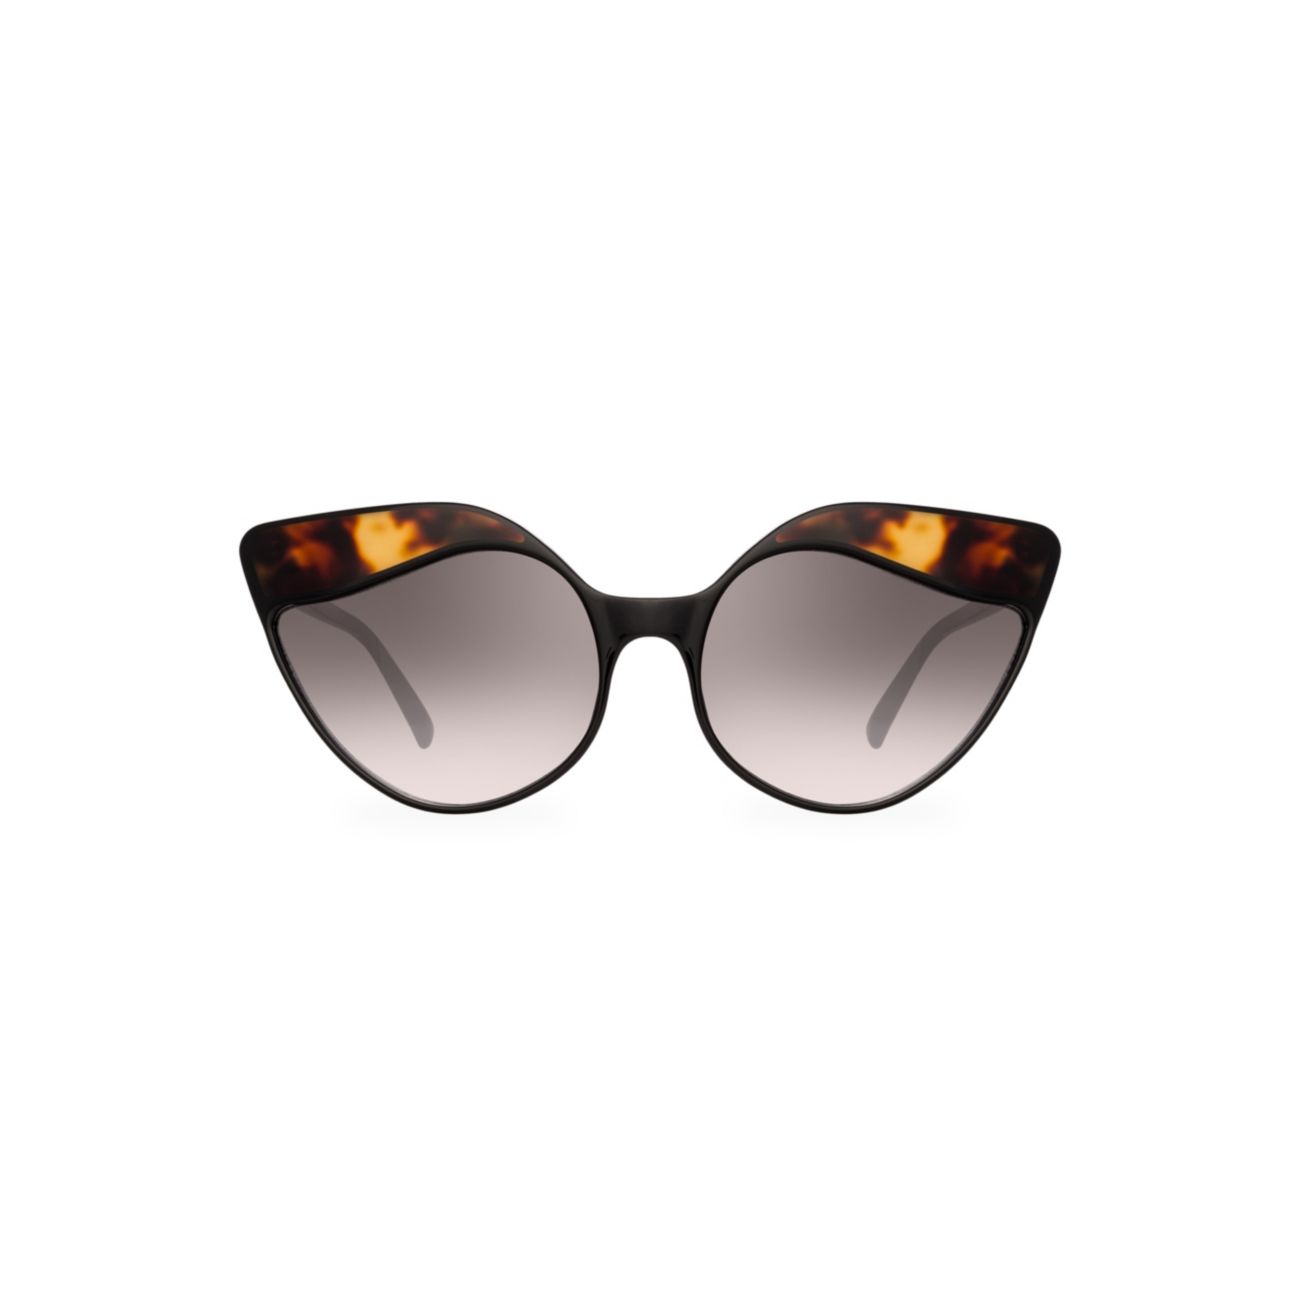 Солнцезащитные очки 871 C3 в оправе "кошачий глаз" в черепаховой оправе Linda Farrow